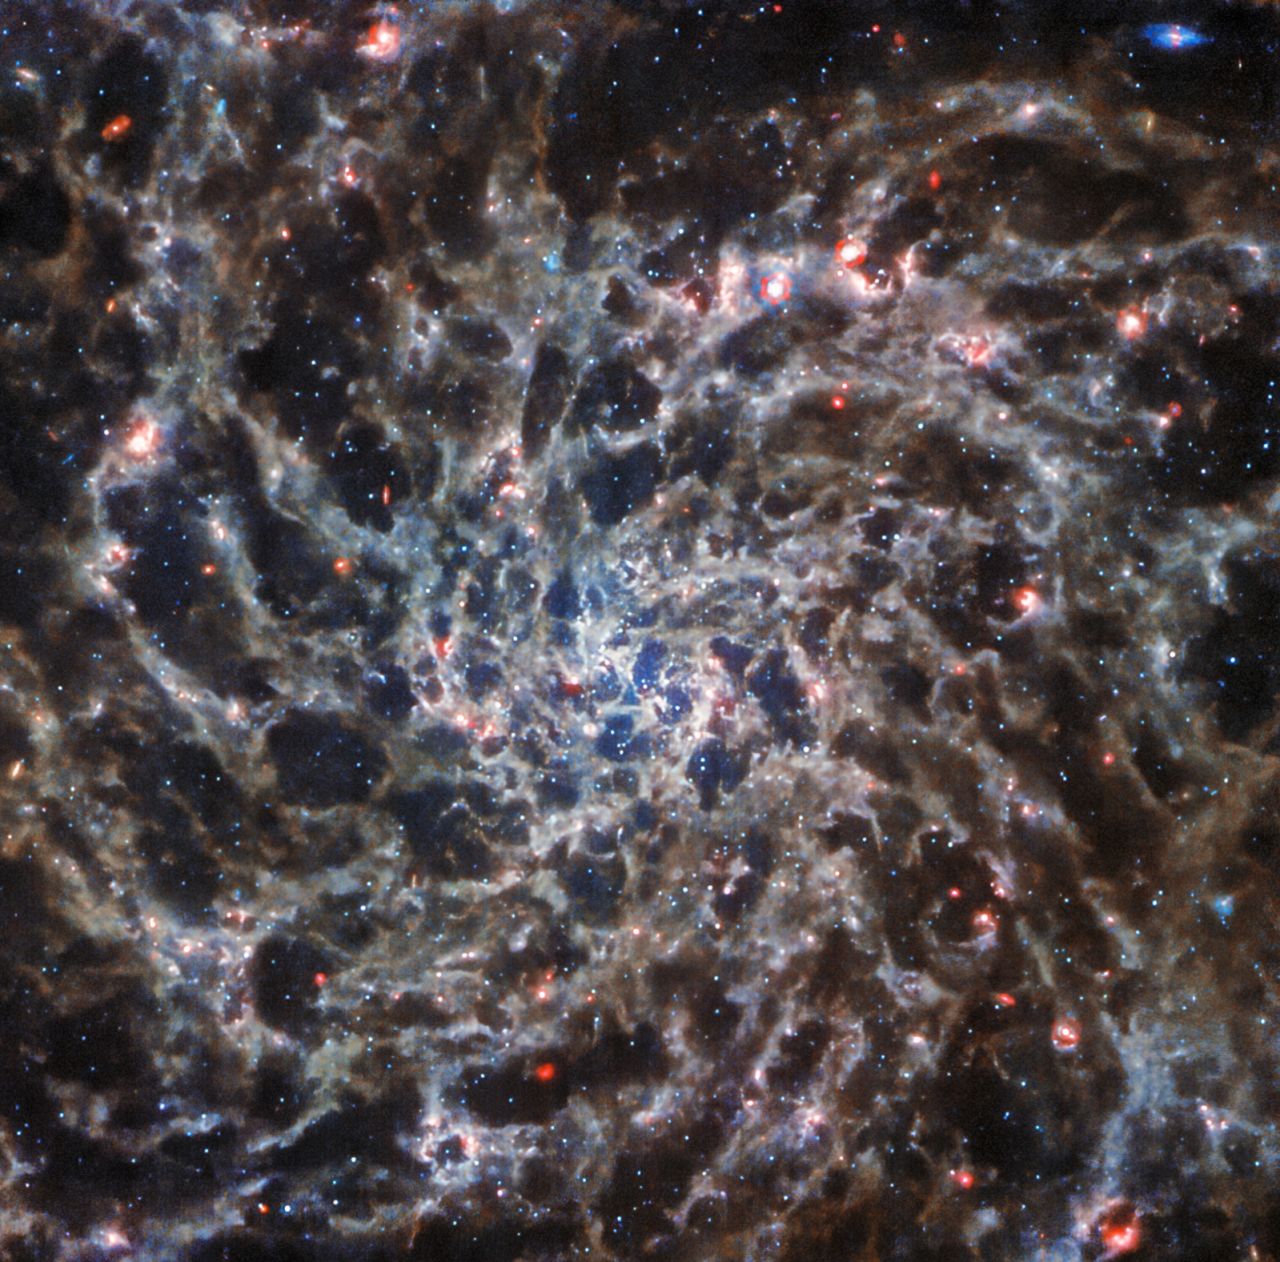 Spiral galaxy captured in 'unprecedented detail' by Webb telescope CNN